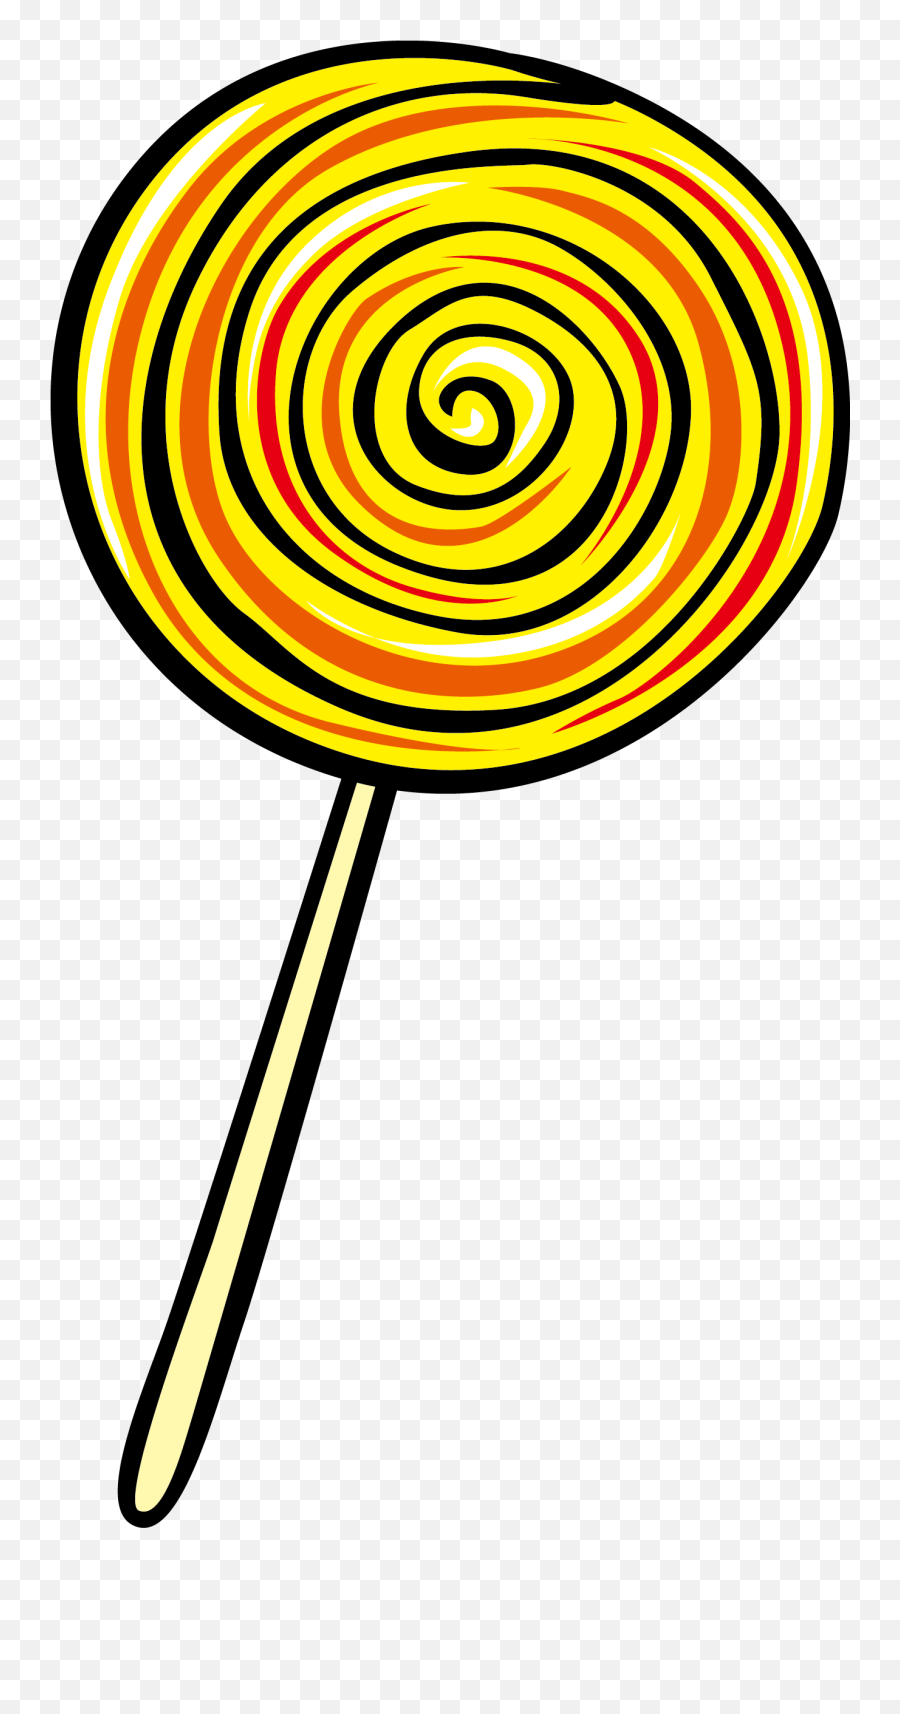 Lollipop Clipart Png - Lollipop Clipart Transparent Background,Lollipop Transparent Background